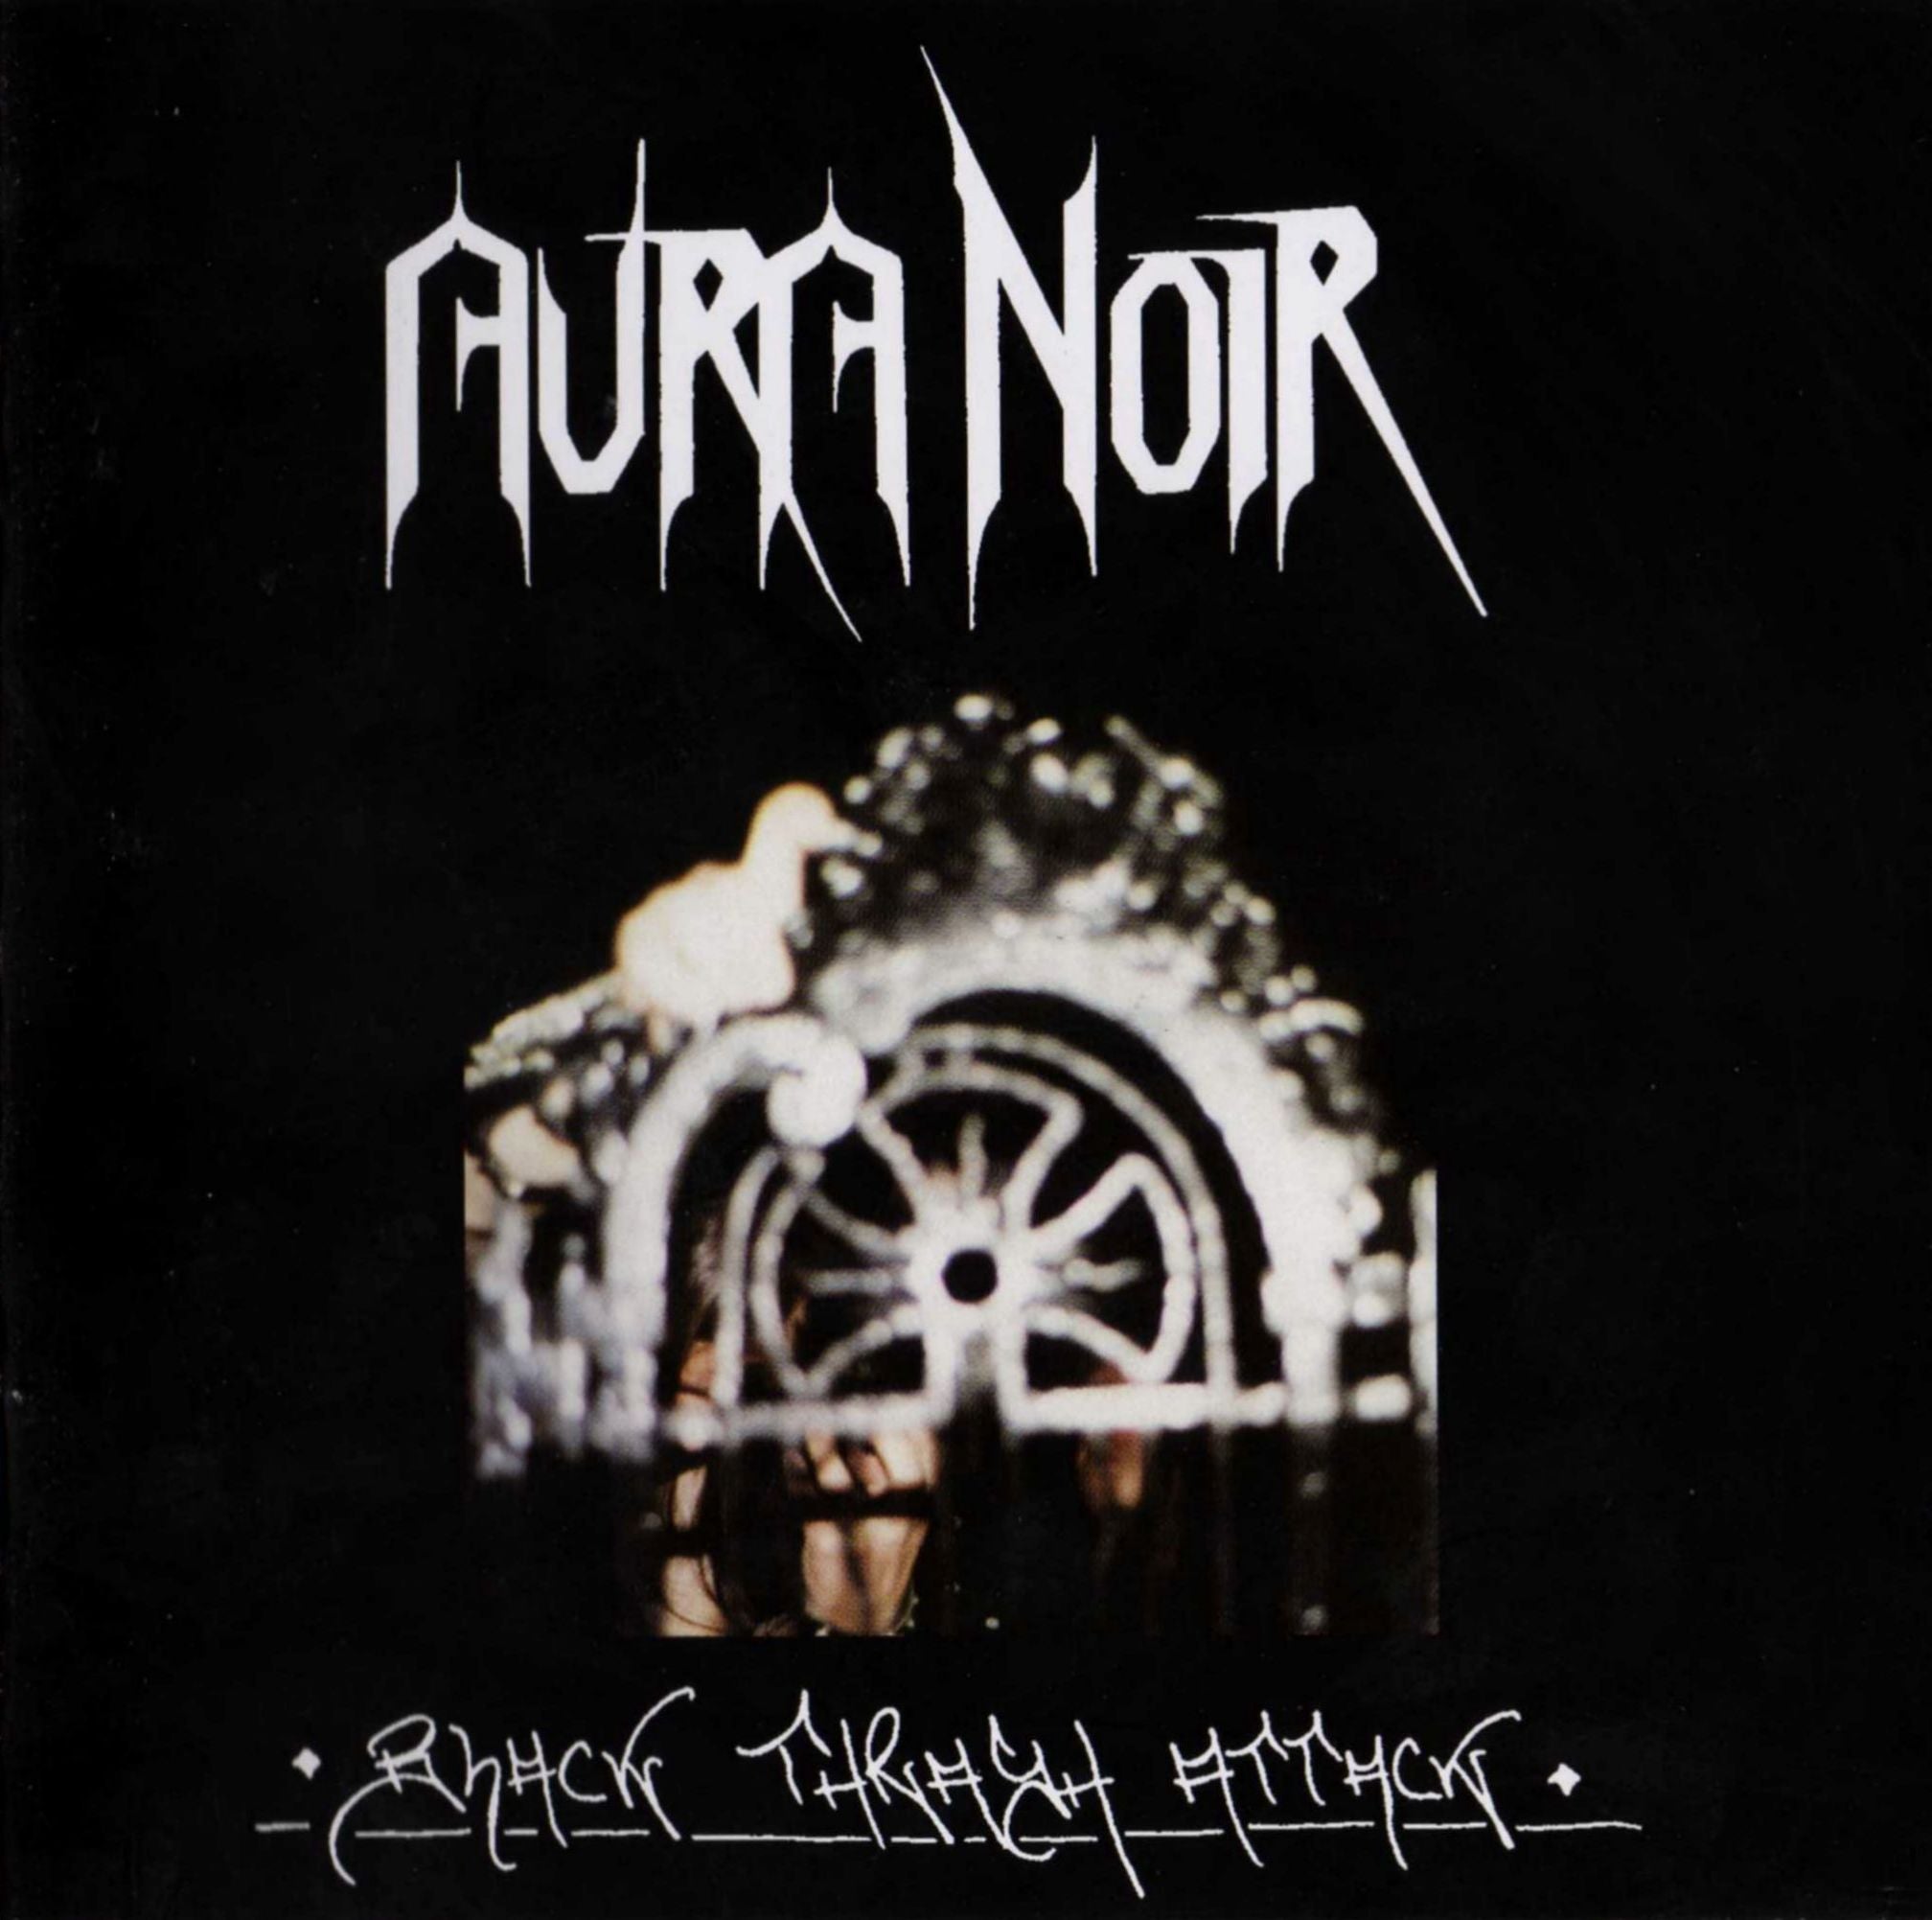 Aura Noir "Black Thrash Attack" Vinyl